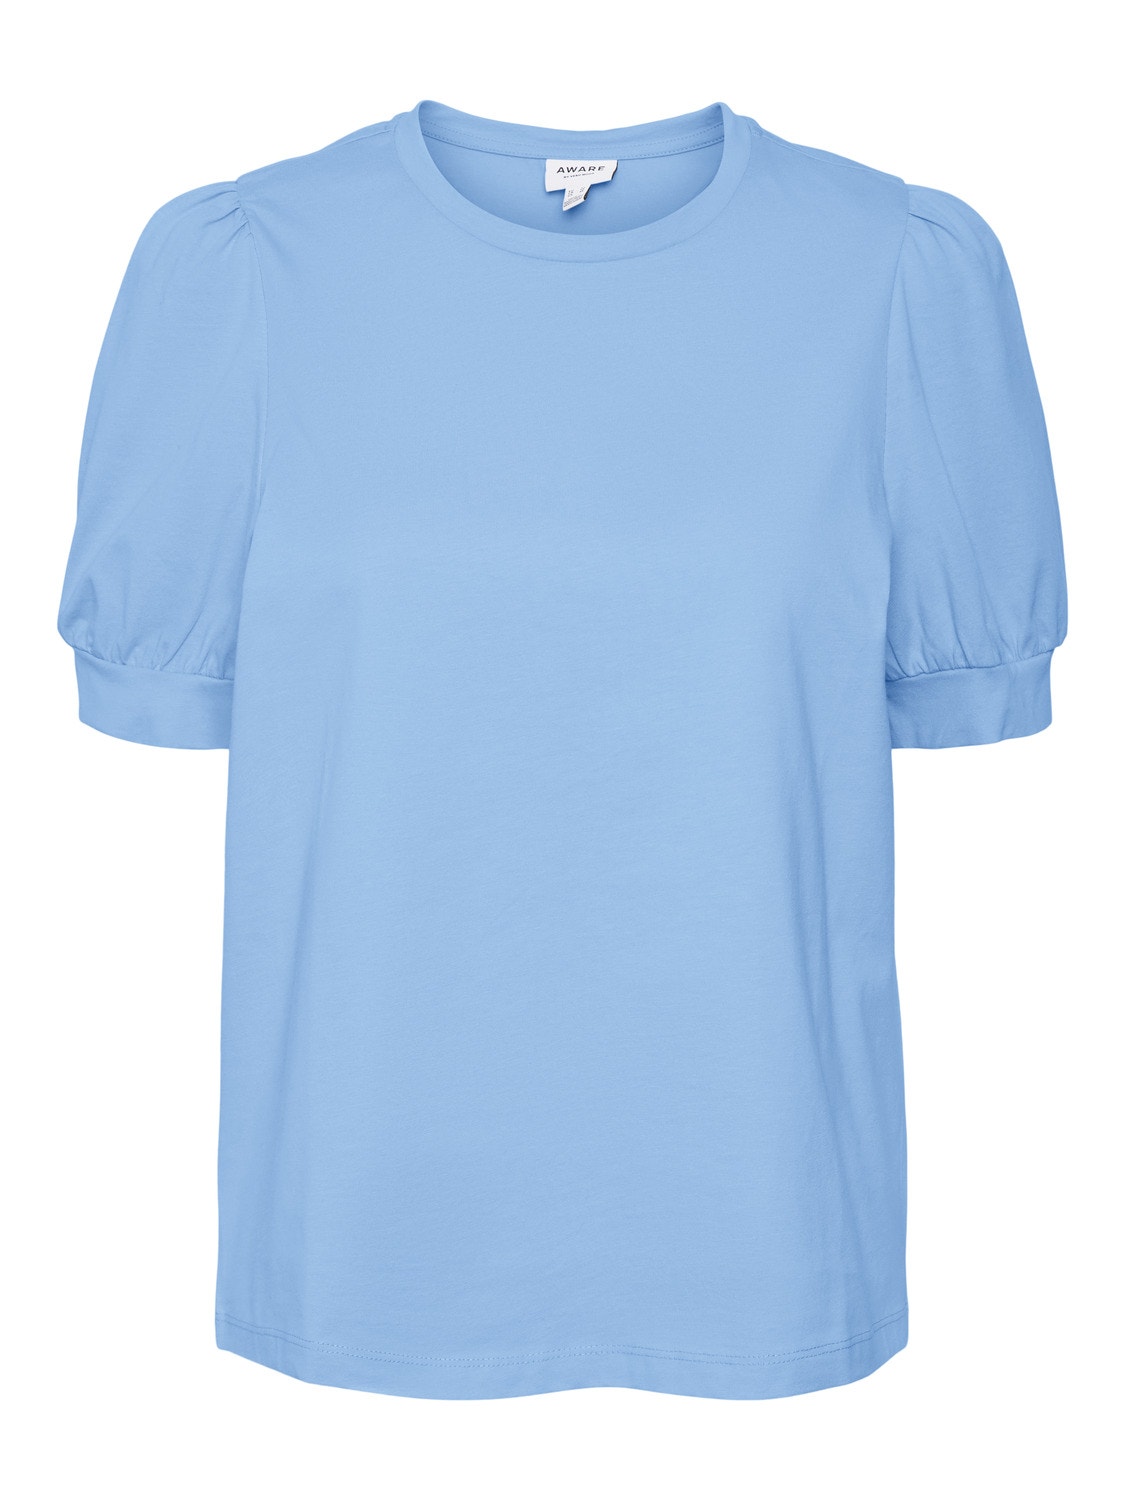 Vero Moda VMKERRY T-Shirt -Little Boy Blue - 10275520